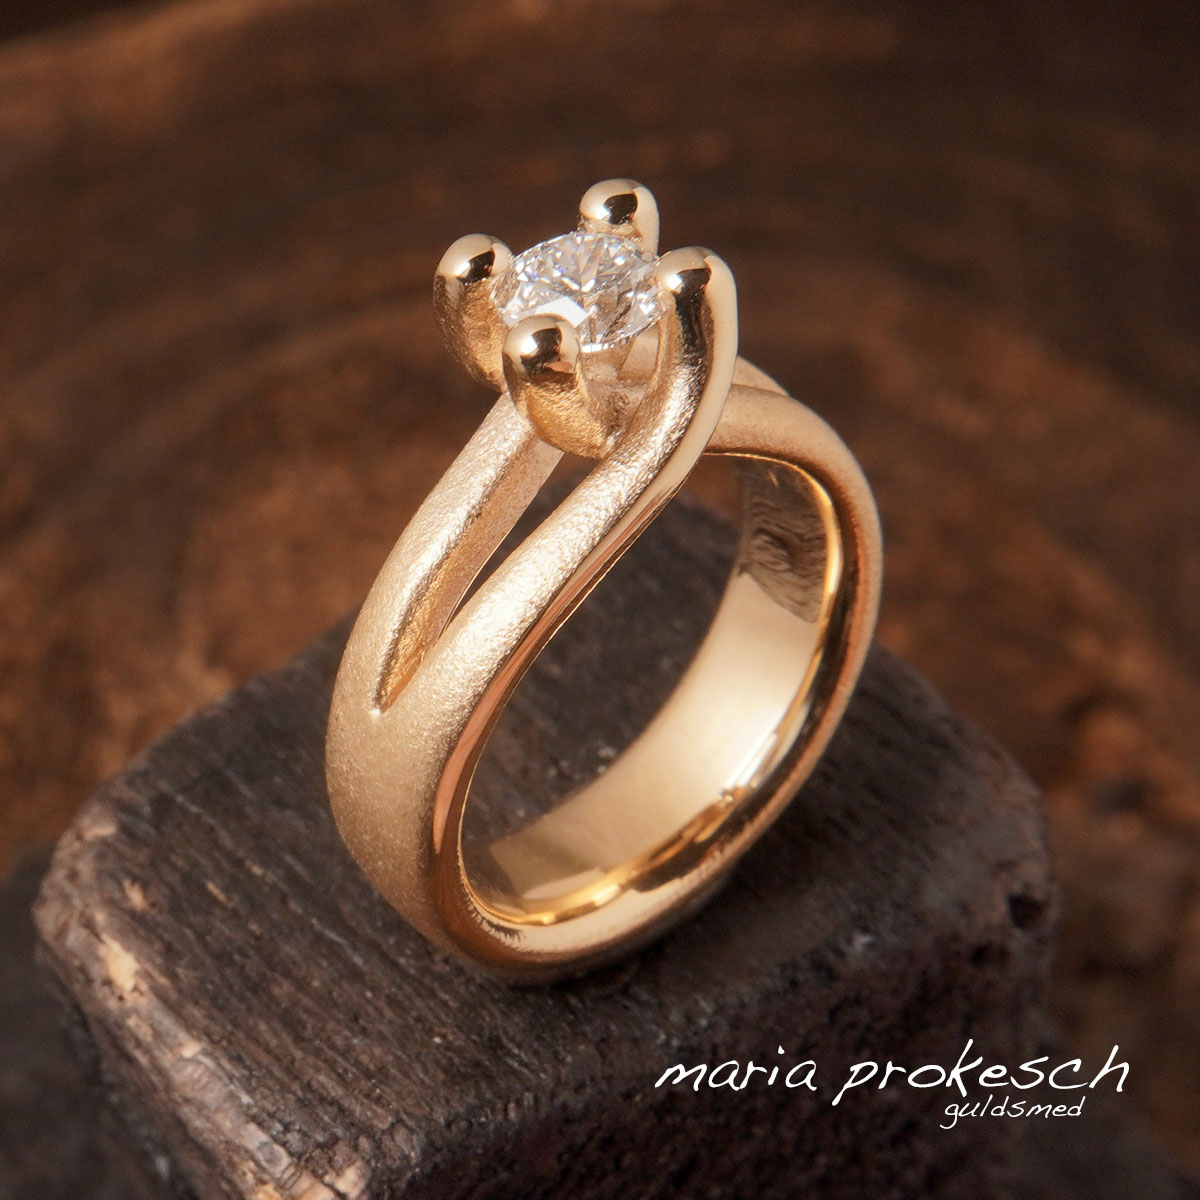 Solitairering med 0,50 carat diamant i 18 karat guld. Utraditionel fingerring med symmetri i eget design. Frier ring og forlovelsesring til hende fra ham. Håndlavet og designet af Guldsmed